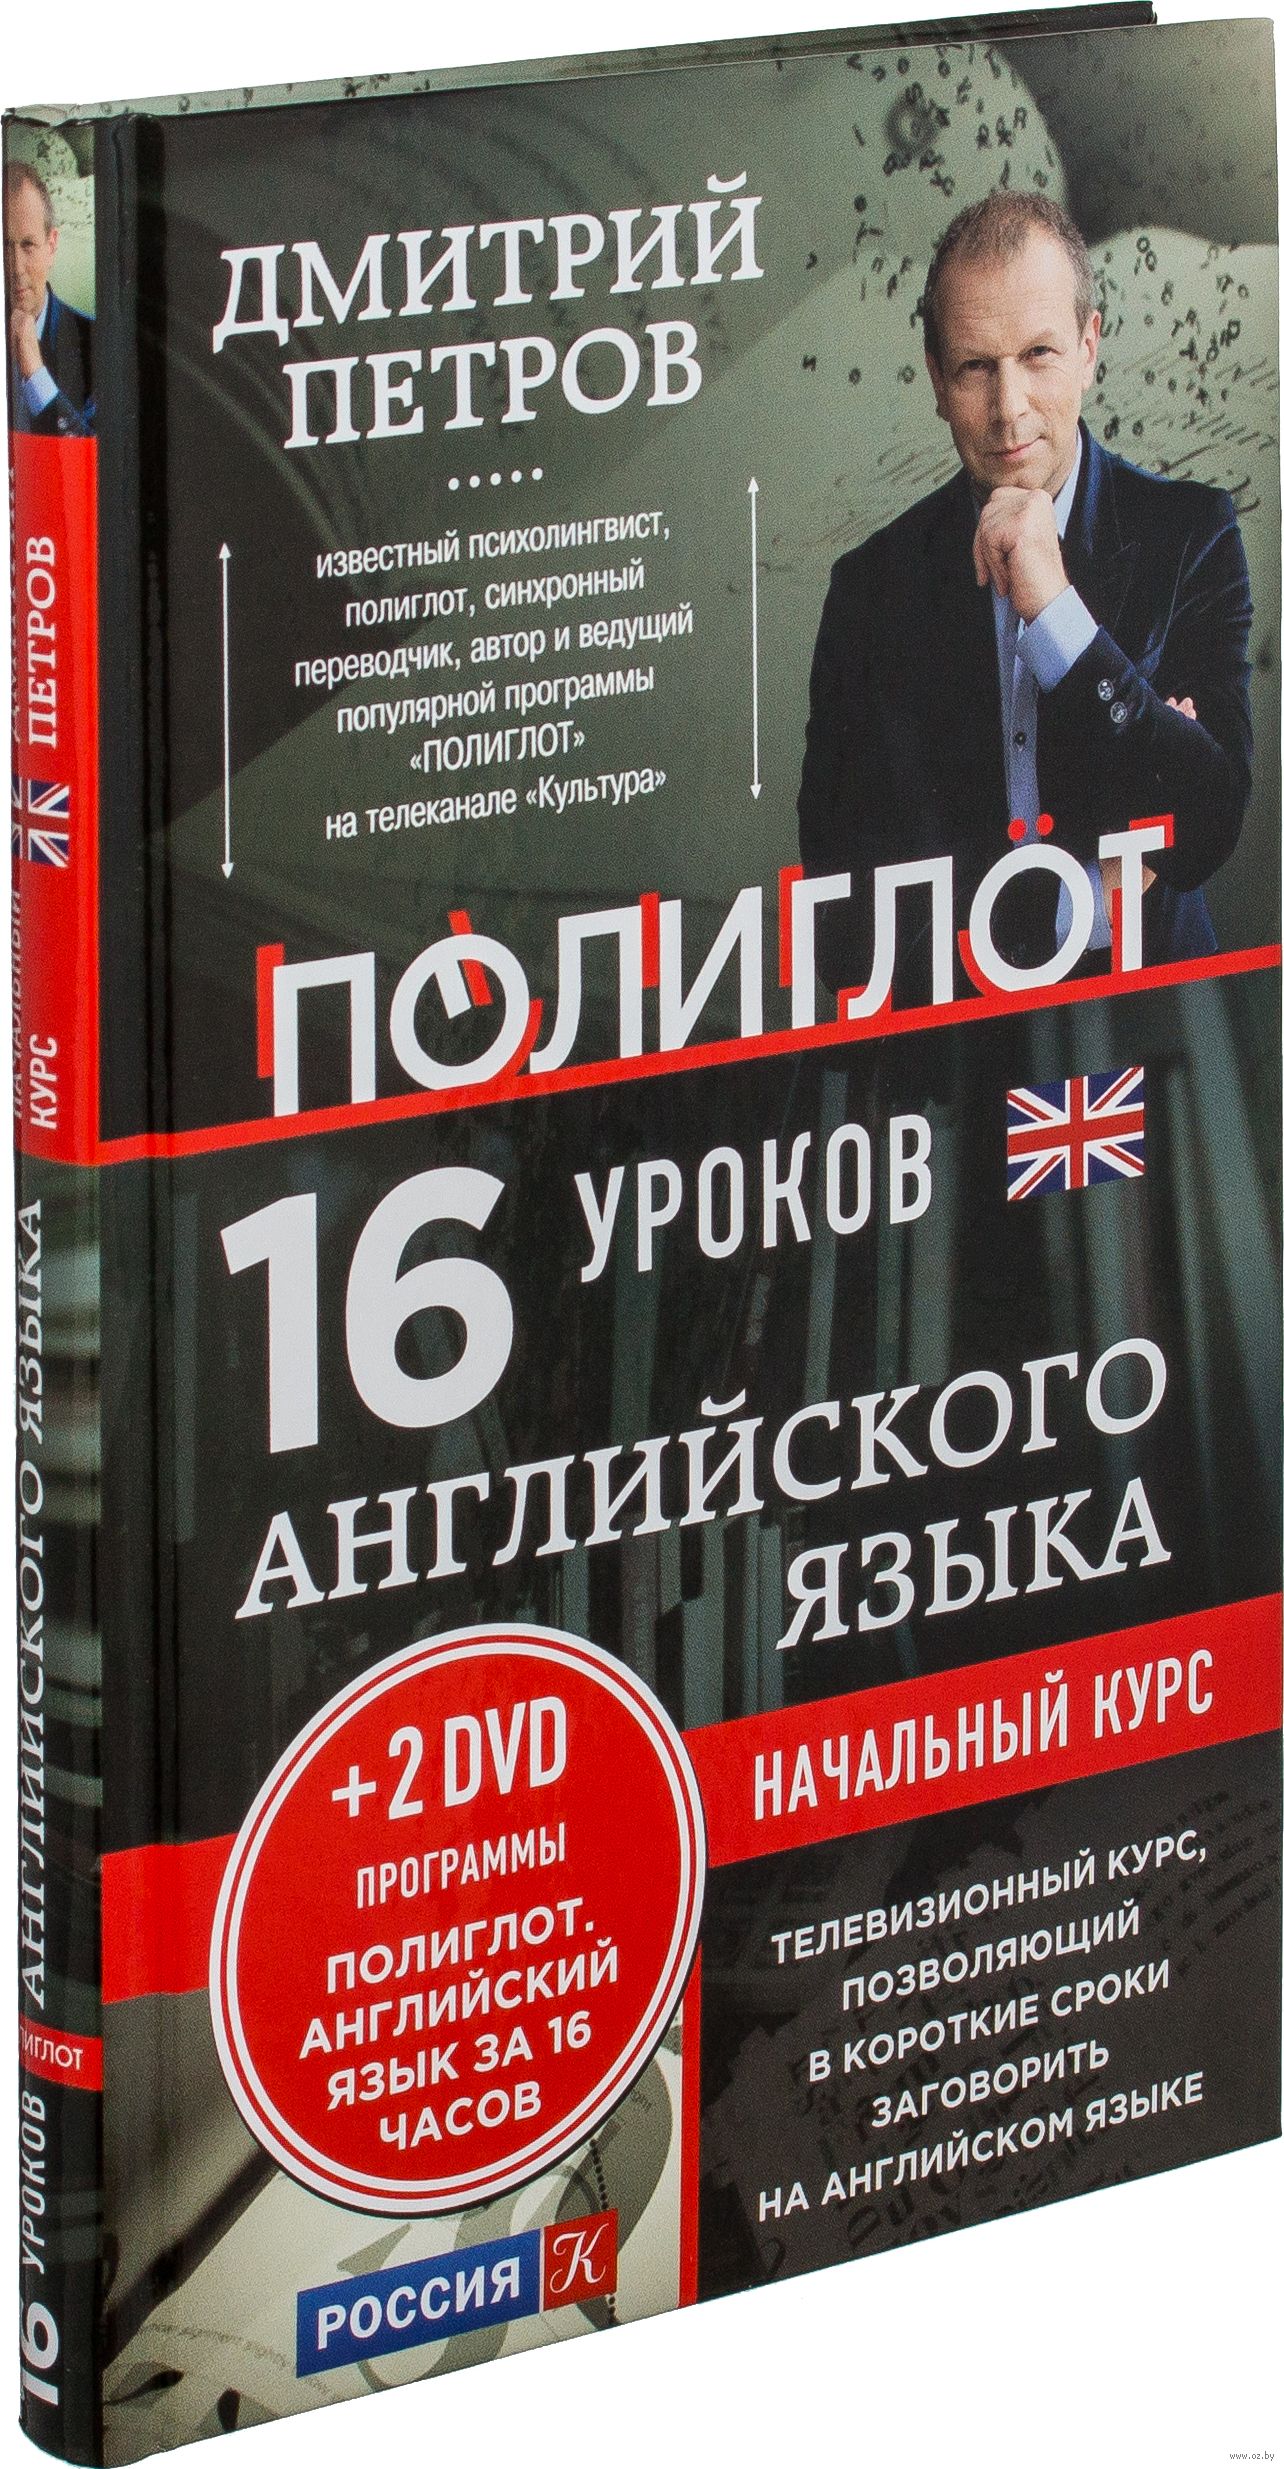 16 часов английского с дмитрием. Английский 16 уроков с Дмитрием Петровым. Полиглот английский за 16 часов с Дмитрием Петровым.